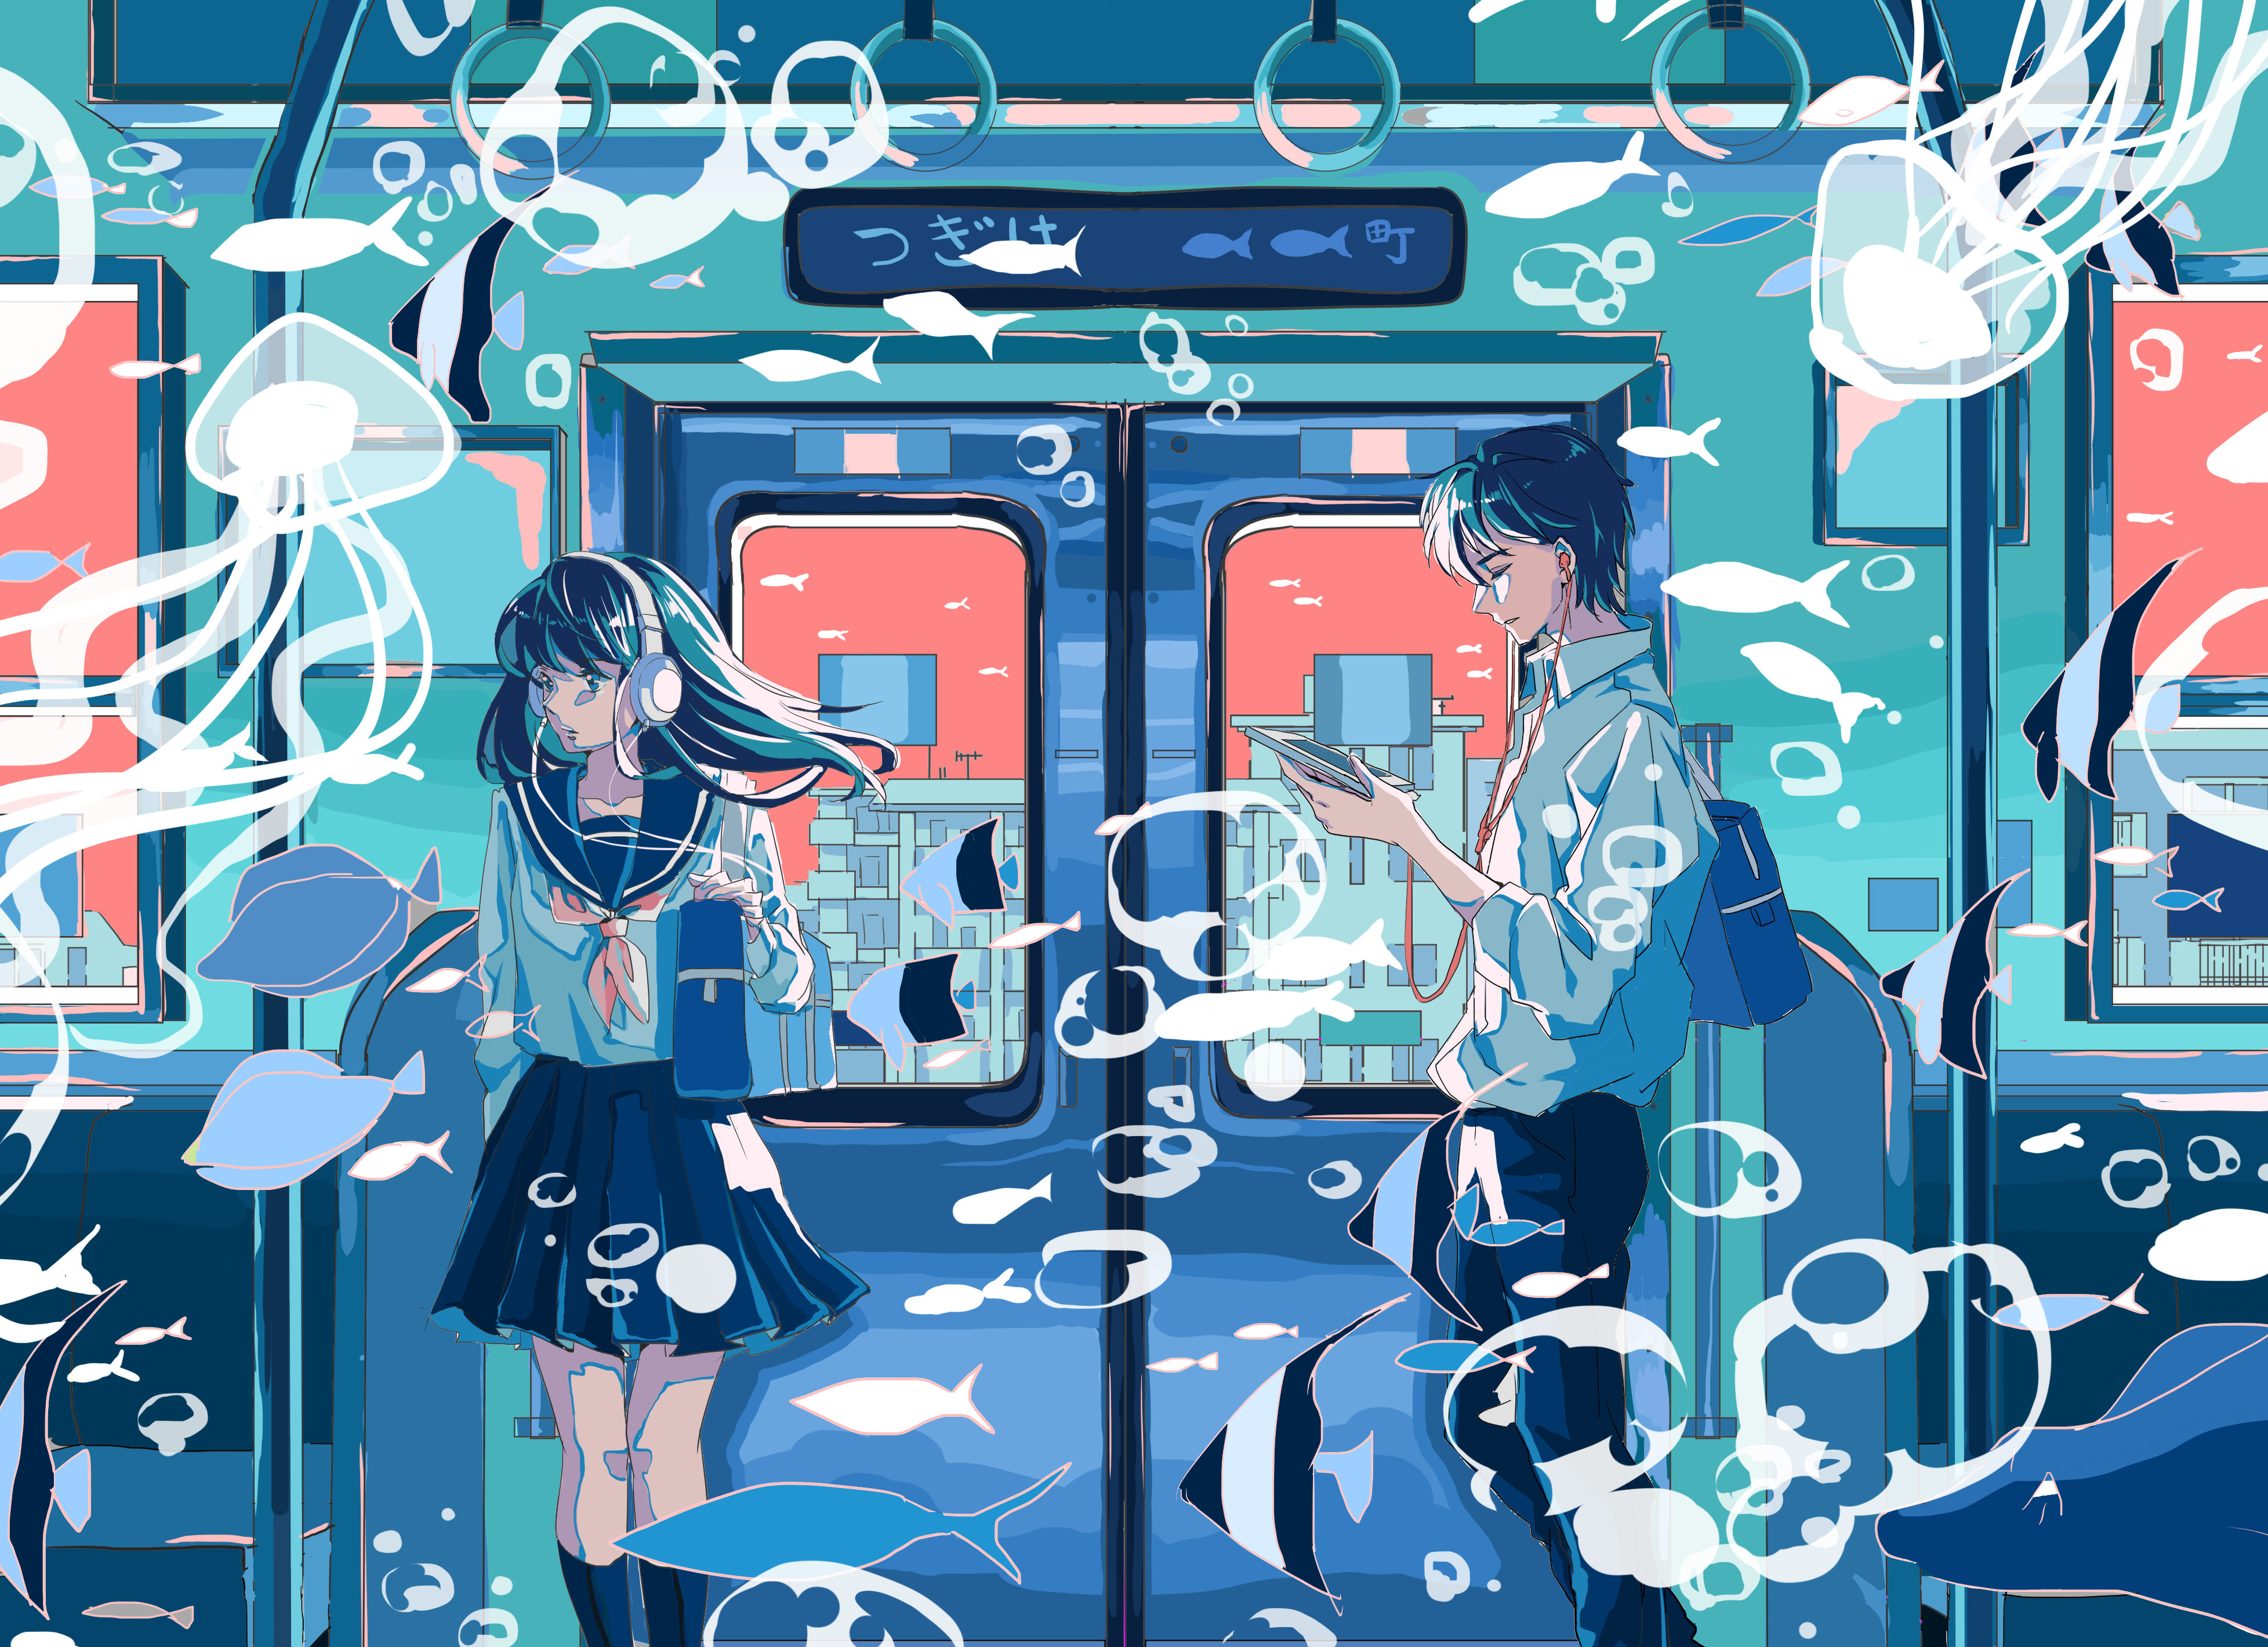 Anime Landscape Train School Uniform Headphones Bubble Fish 3911x2840